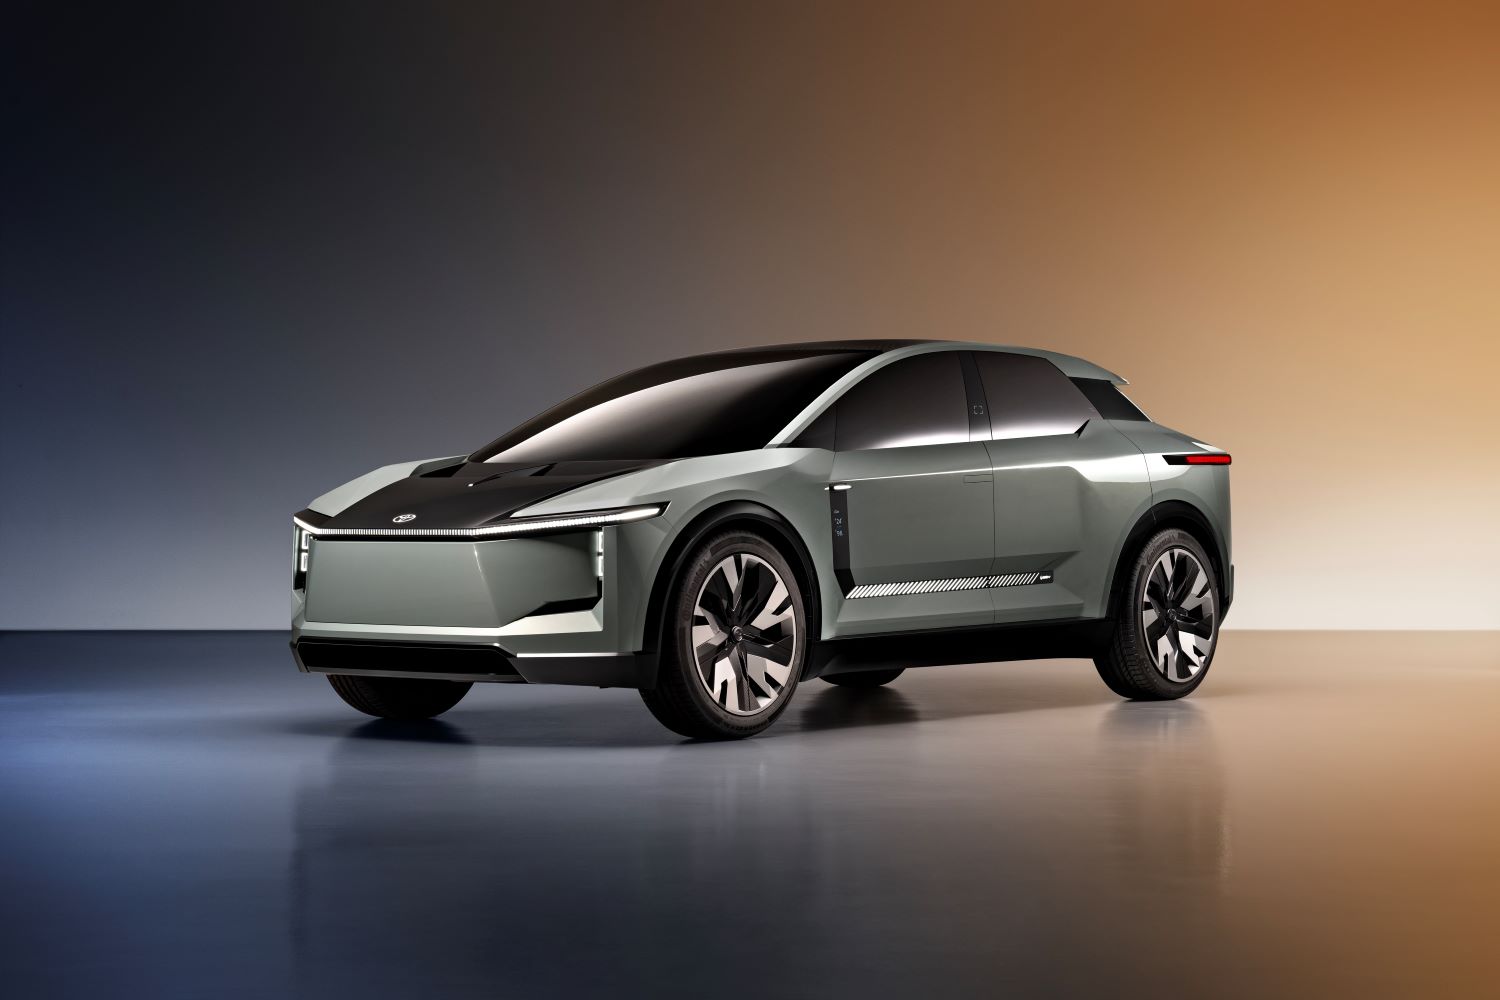 Toyota presentó una serie de vehículos eléctricos con batería y de pila dentro de su plan global de "Movilidad para todos". ¡Hay muchas soluciones! V12MAGAZINE